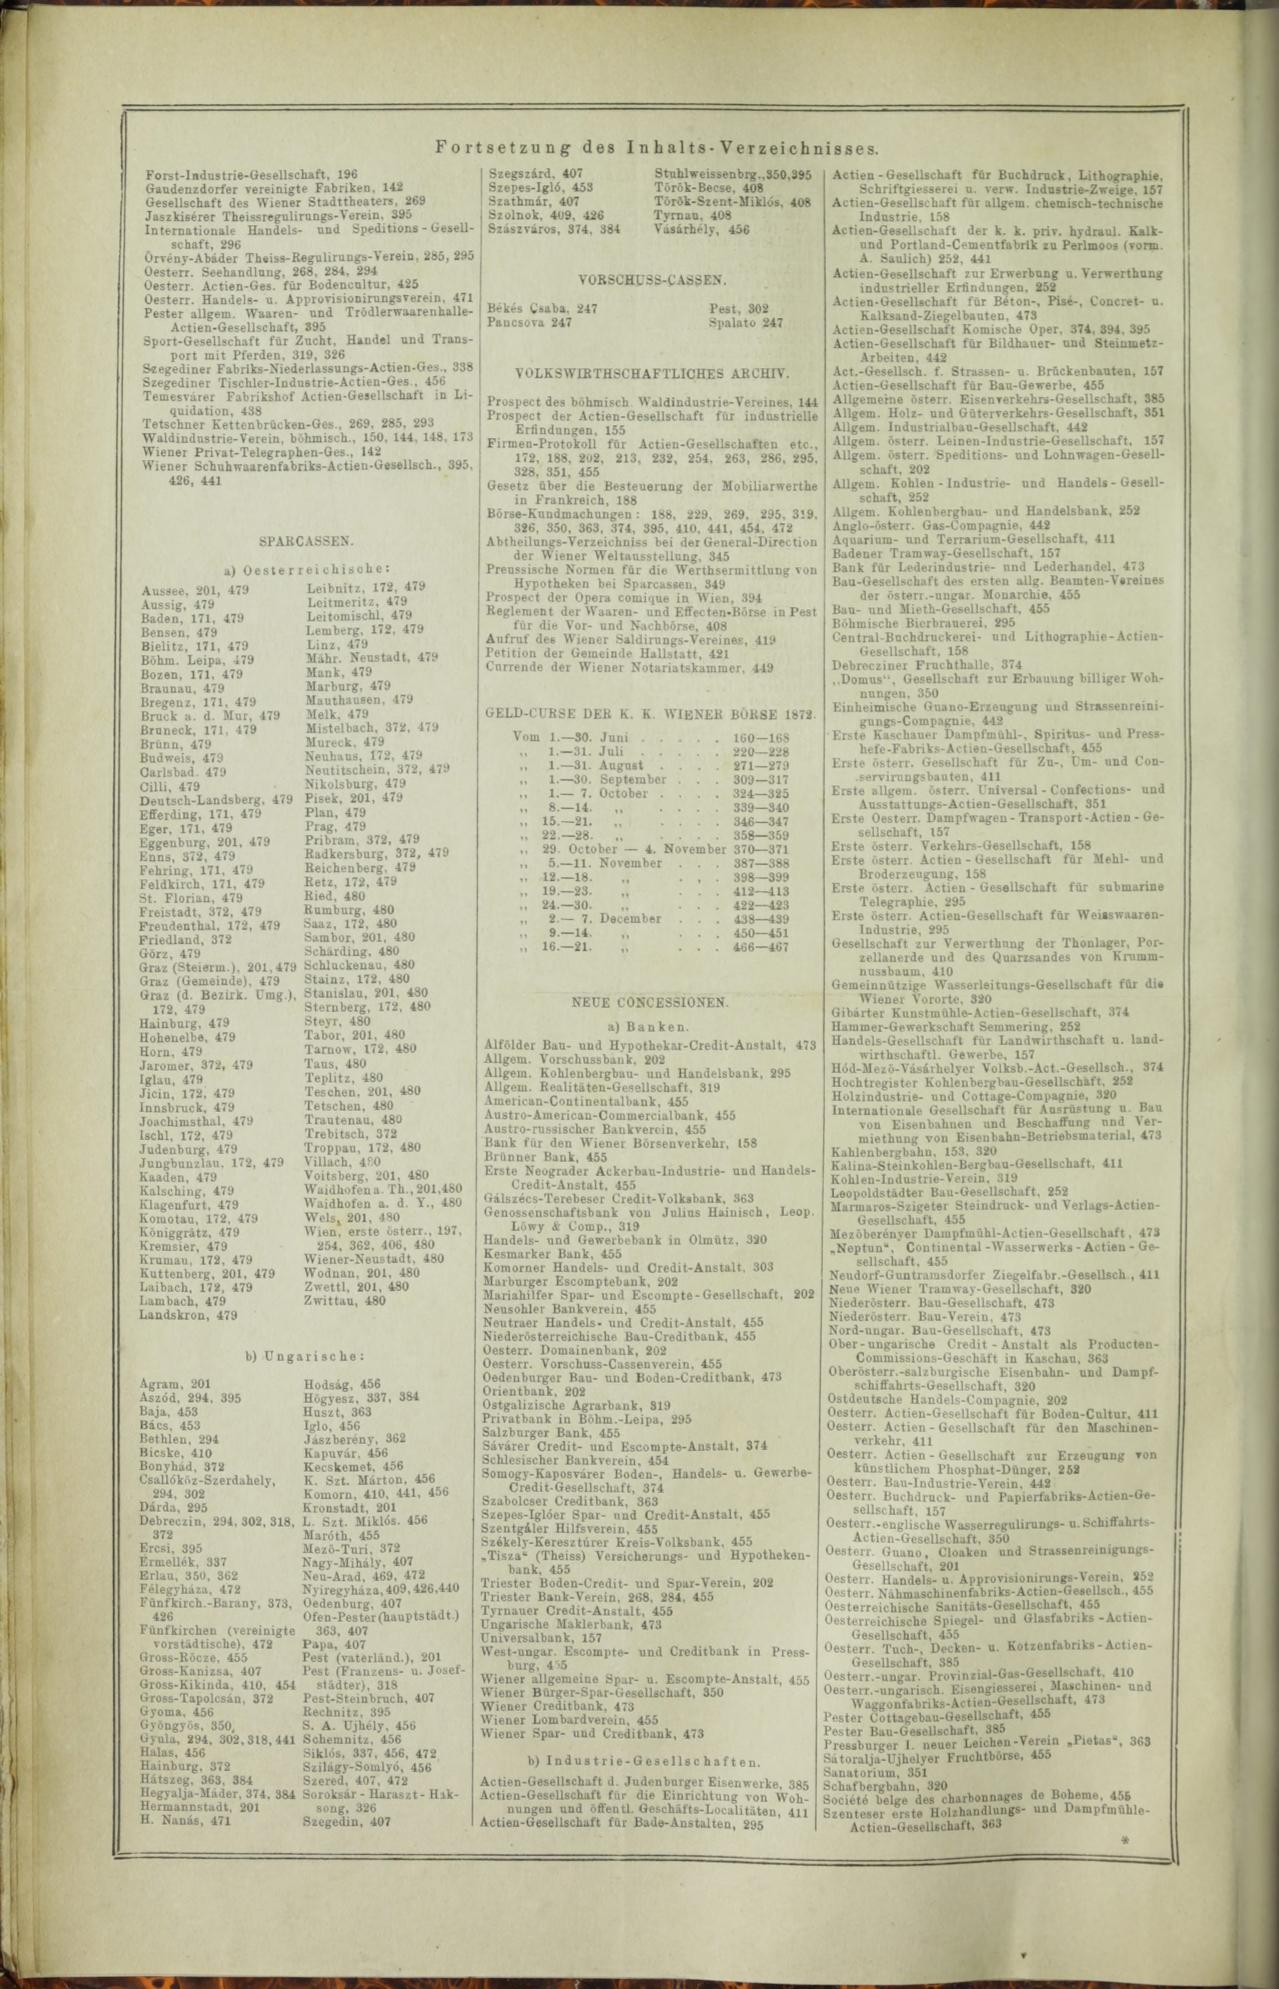 Der Tresor 03.12.1872 - Seite 21